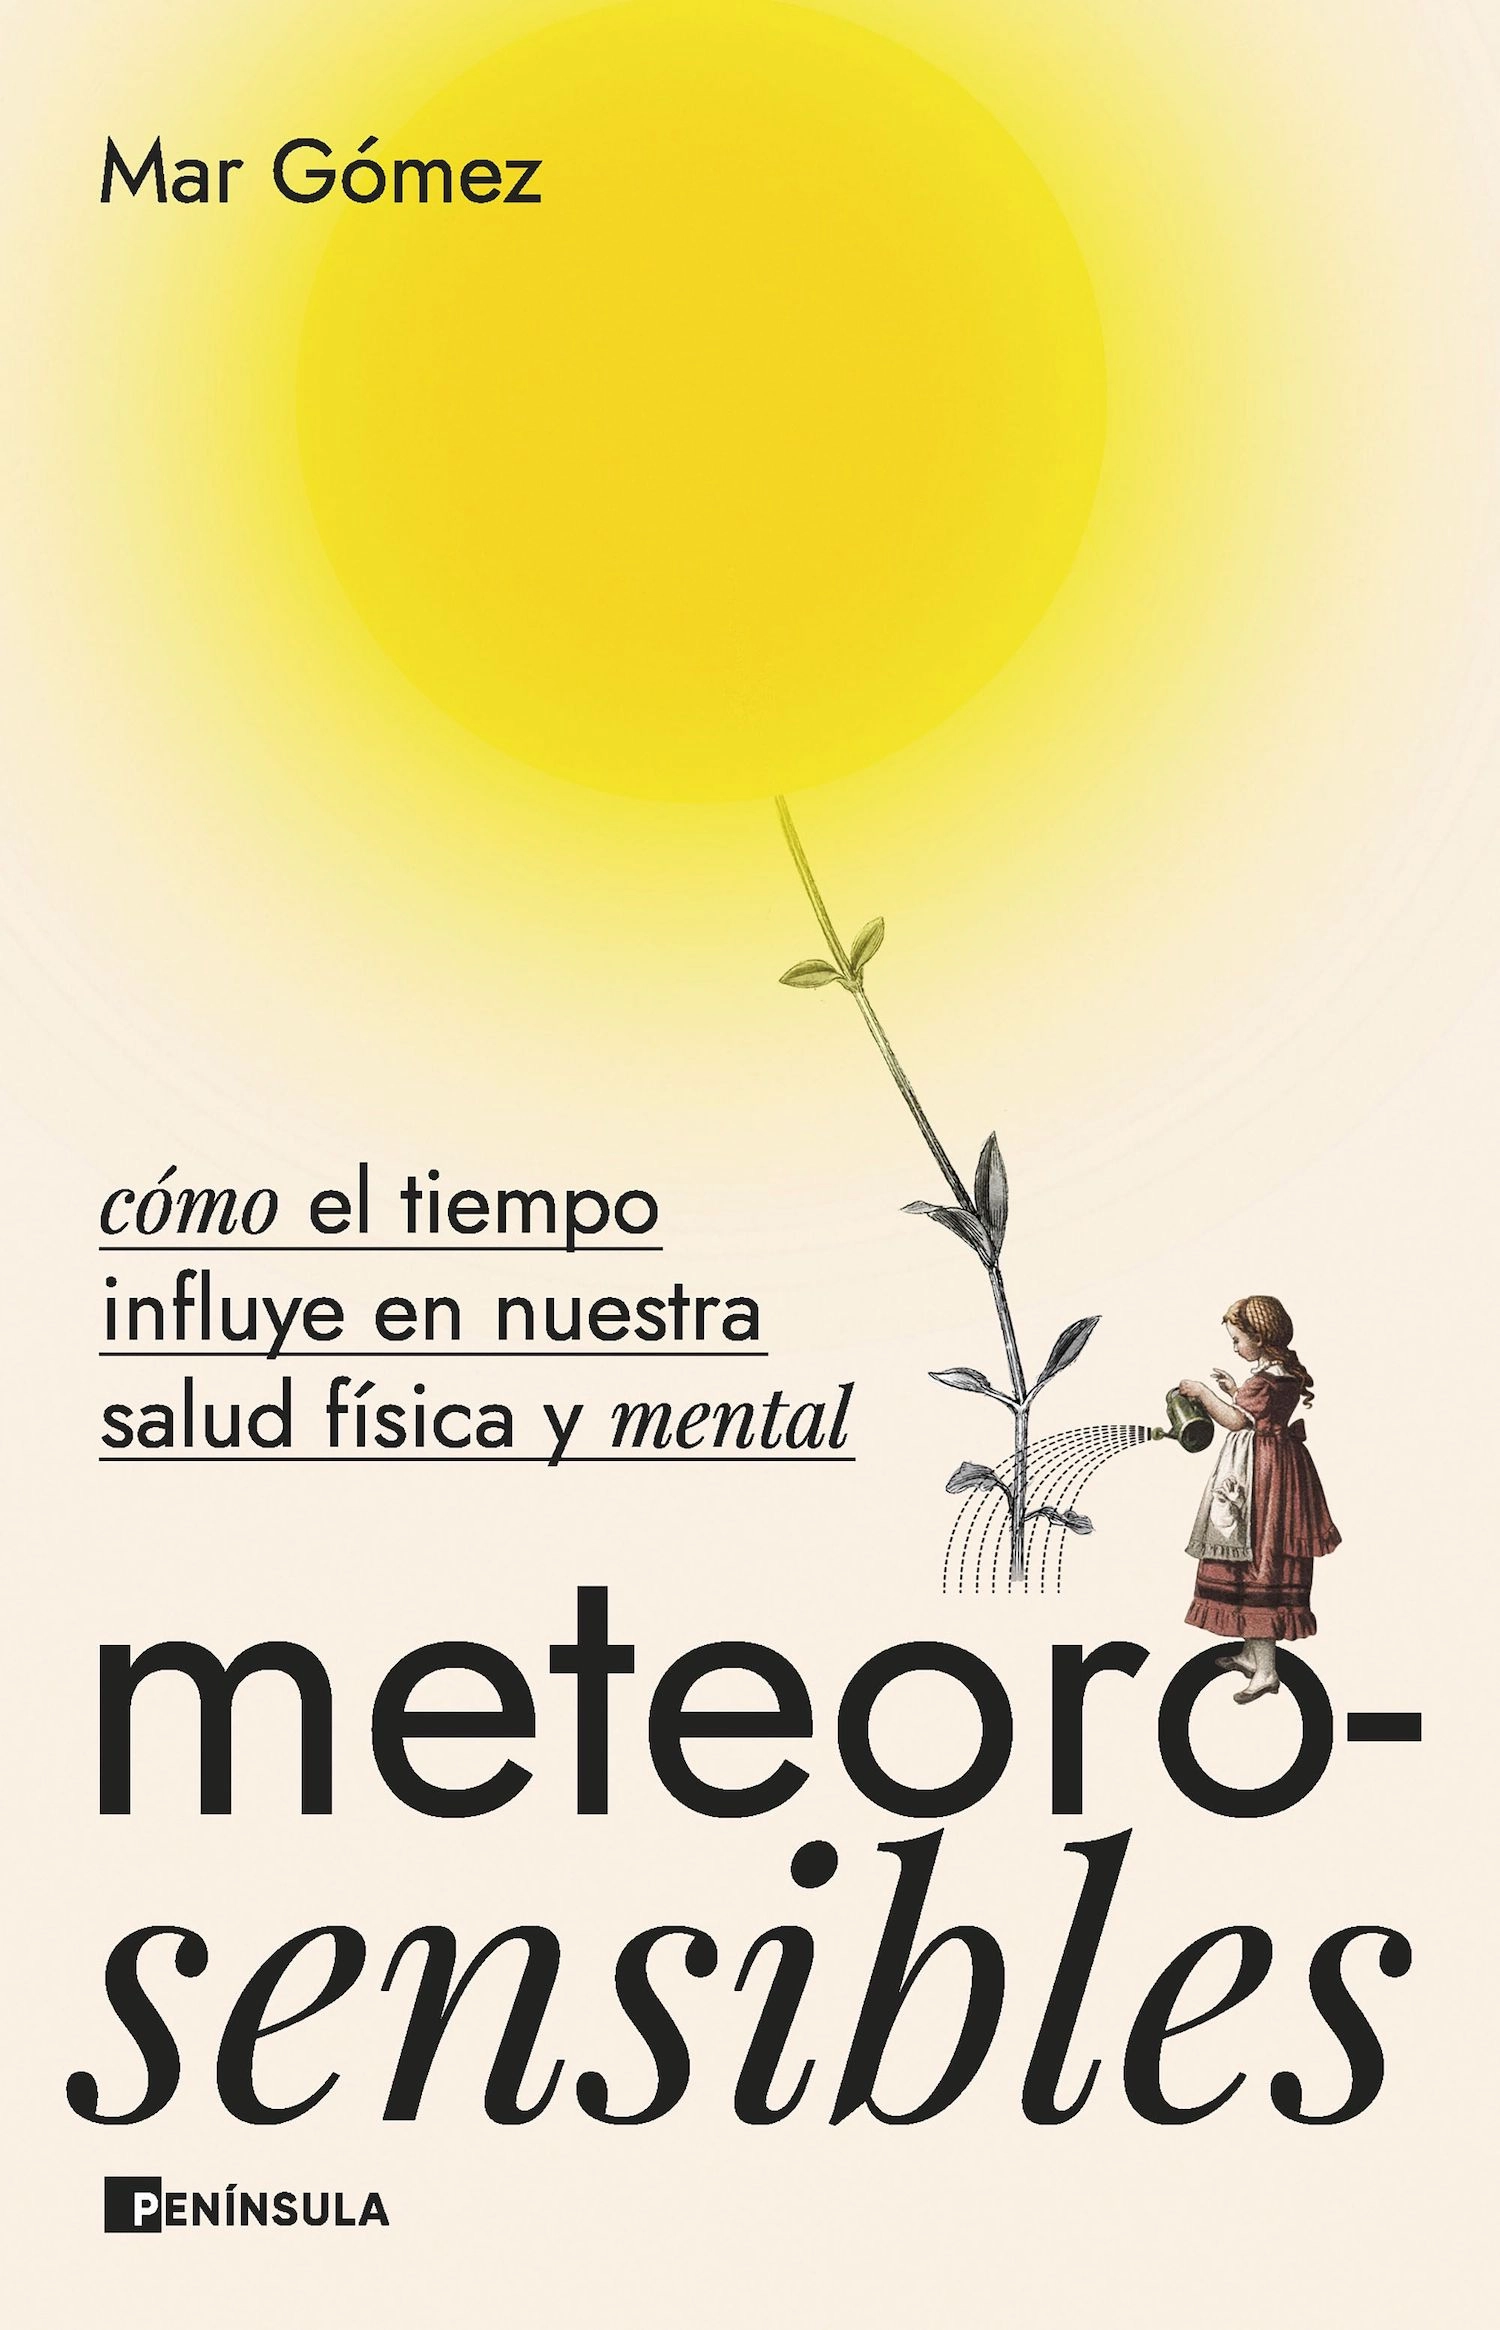 Meteorosensibles, cómo el tiempo influye en nuestra salud física y mental, de Mar Gómez (Ed. Península).